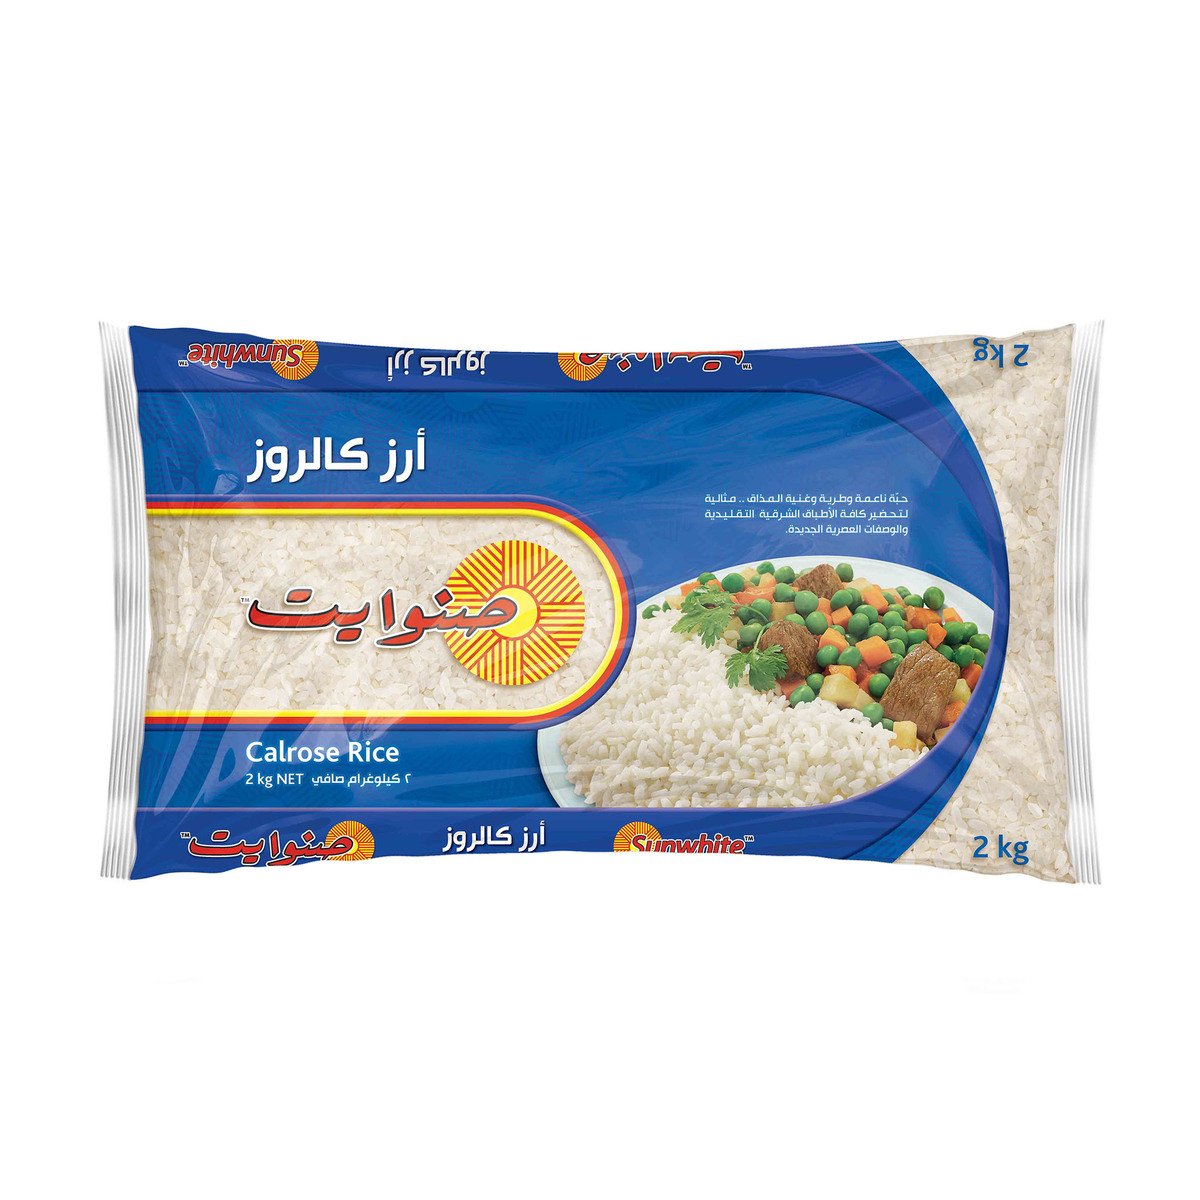 اشتري قم بشراء صن وايت أرز كالروز 2 كجم Online at Best Price من الموقع - من لولو هايبر ماركت Egyptian Rice في السعودية